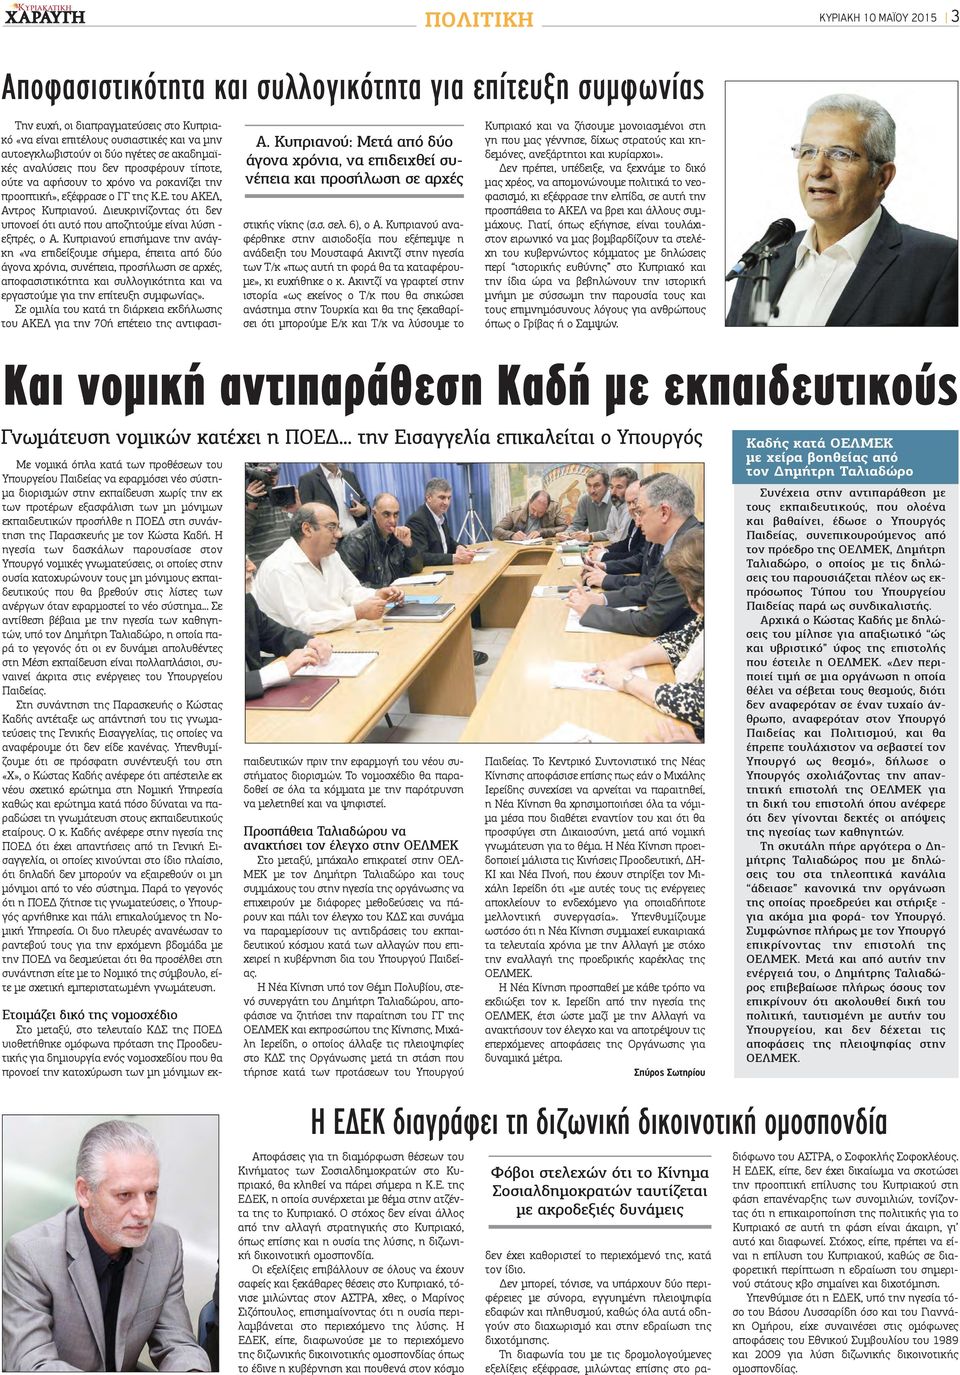 ηγέτες σε ακαδημαϊκές αναλύσεις που δεν προσφέρουν τίποτε, ούτε να αφήσουν το χρόνο να ροκανίζει την προοπτική», εξέφρασε ο ΓΓ της Κ.Ε. του ΑΚΕΛ, Αντρος Κυπριανού.